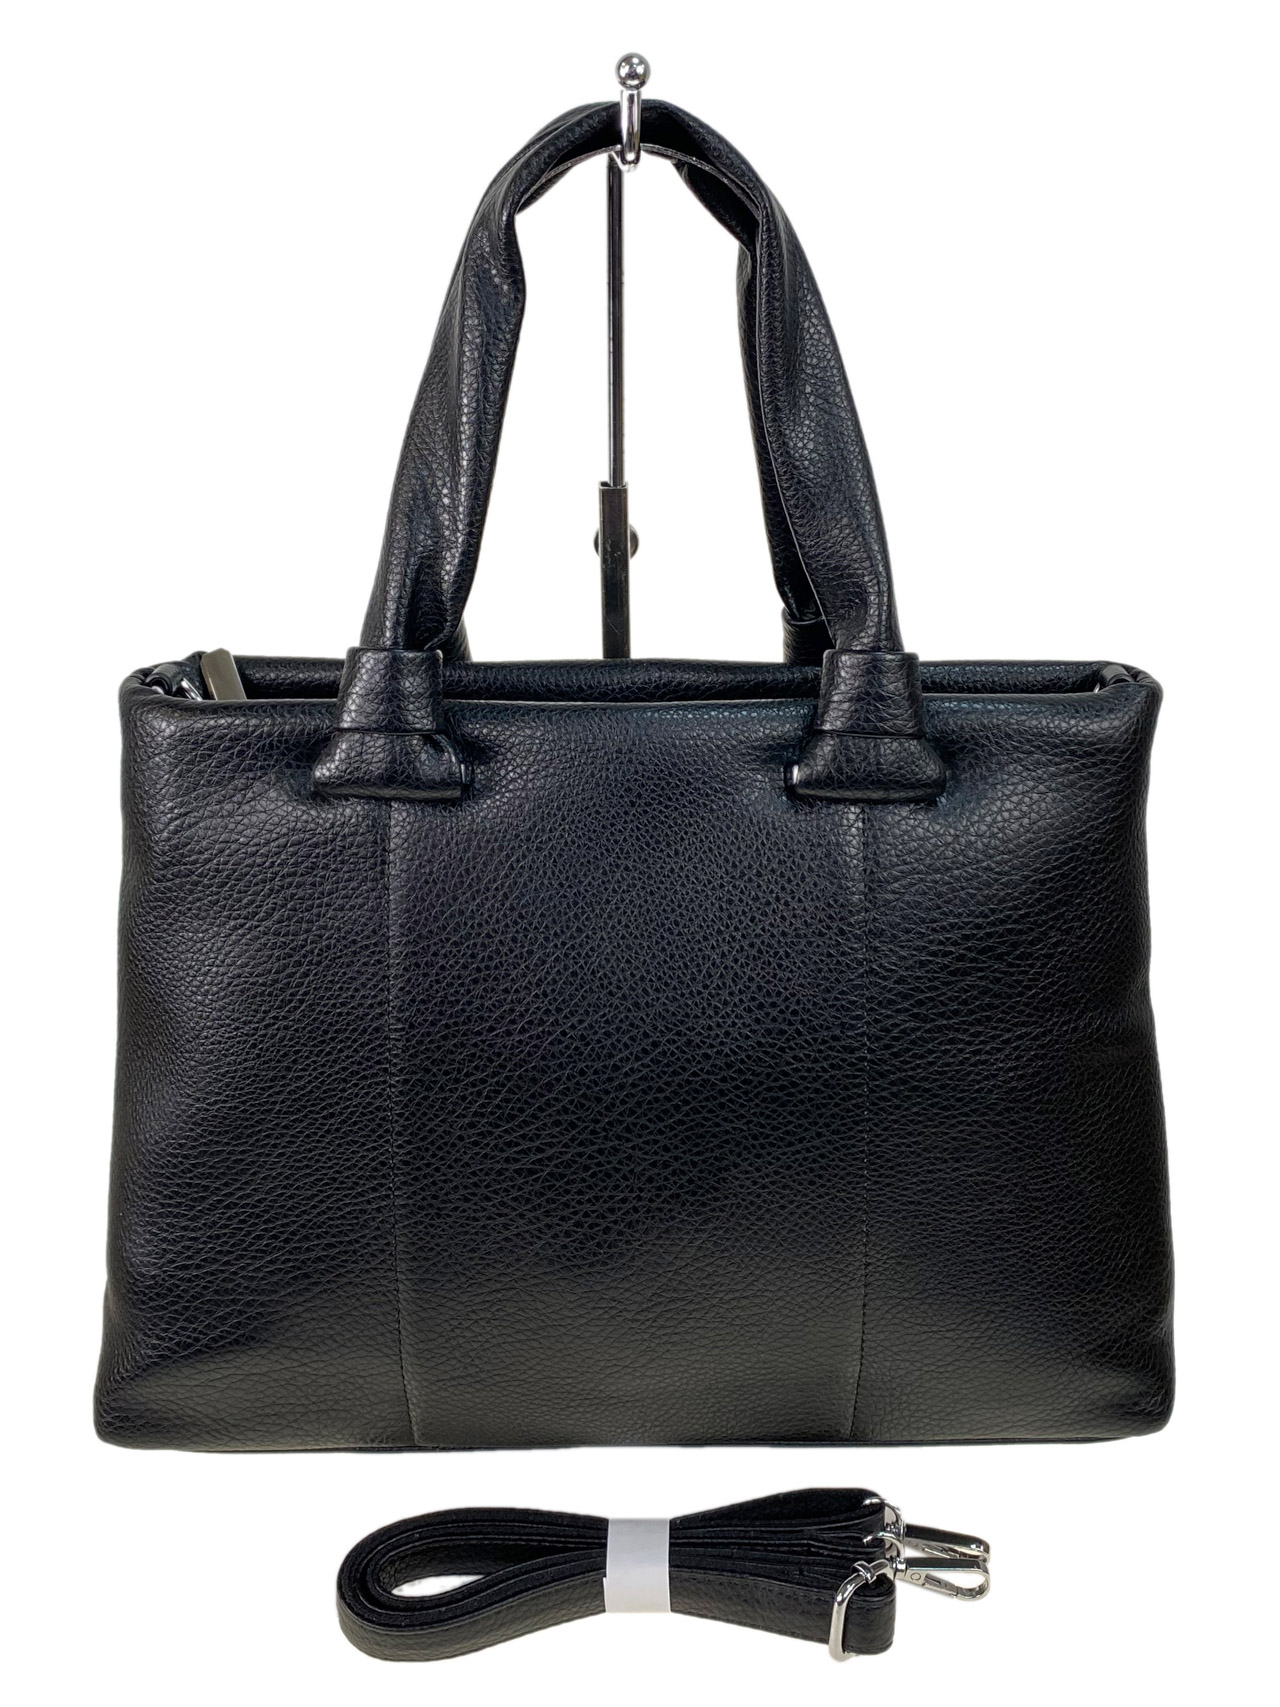 Женская сумка клатч из искусственной кожи , цвет черный